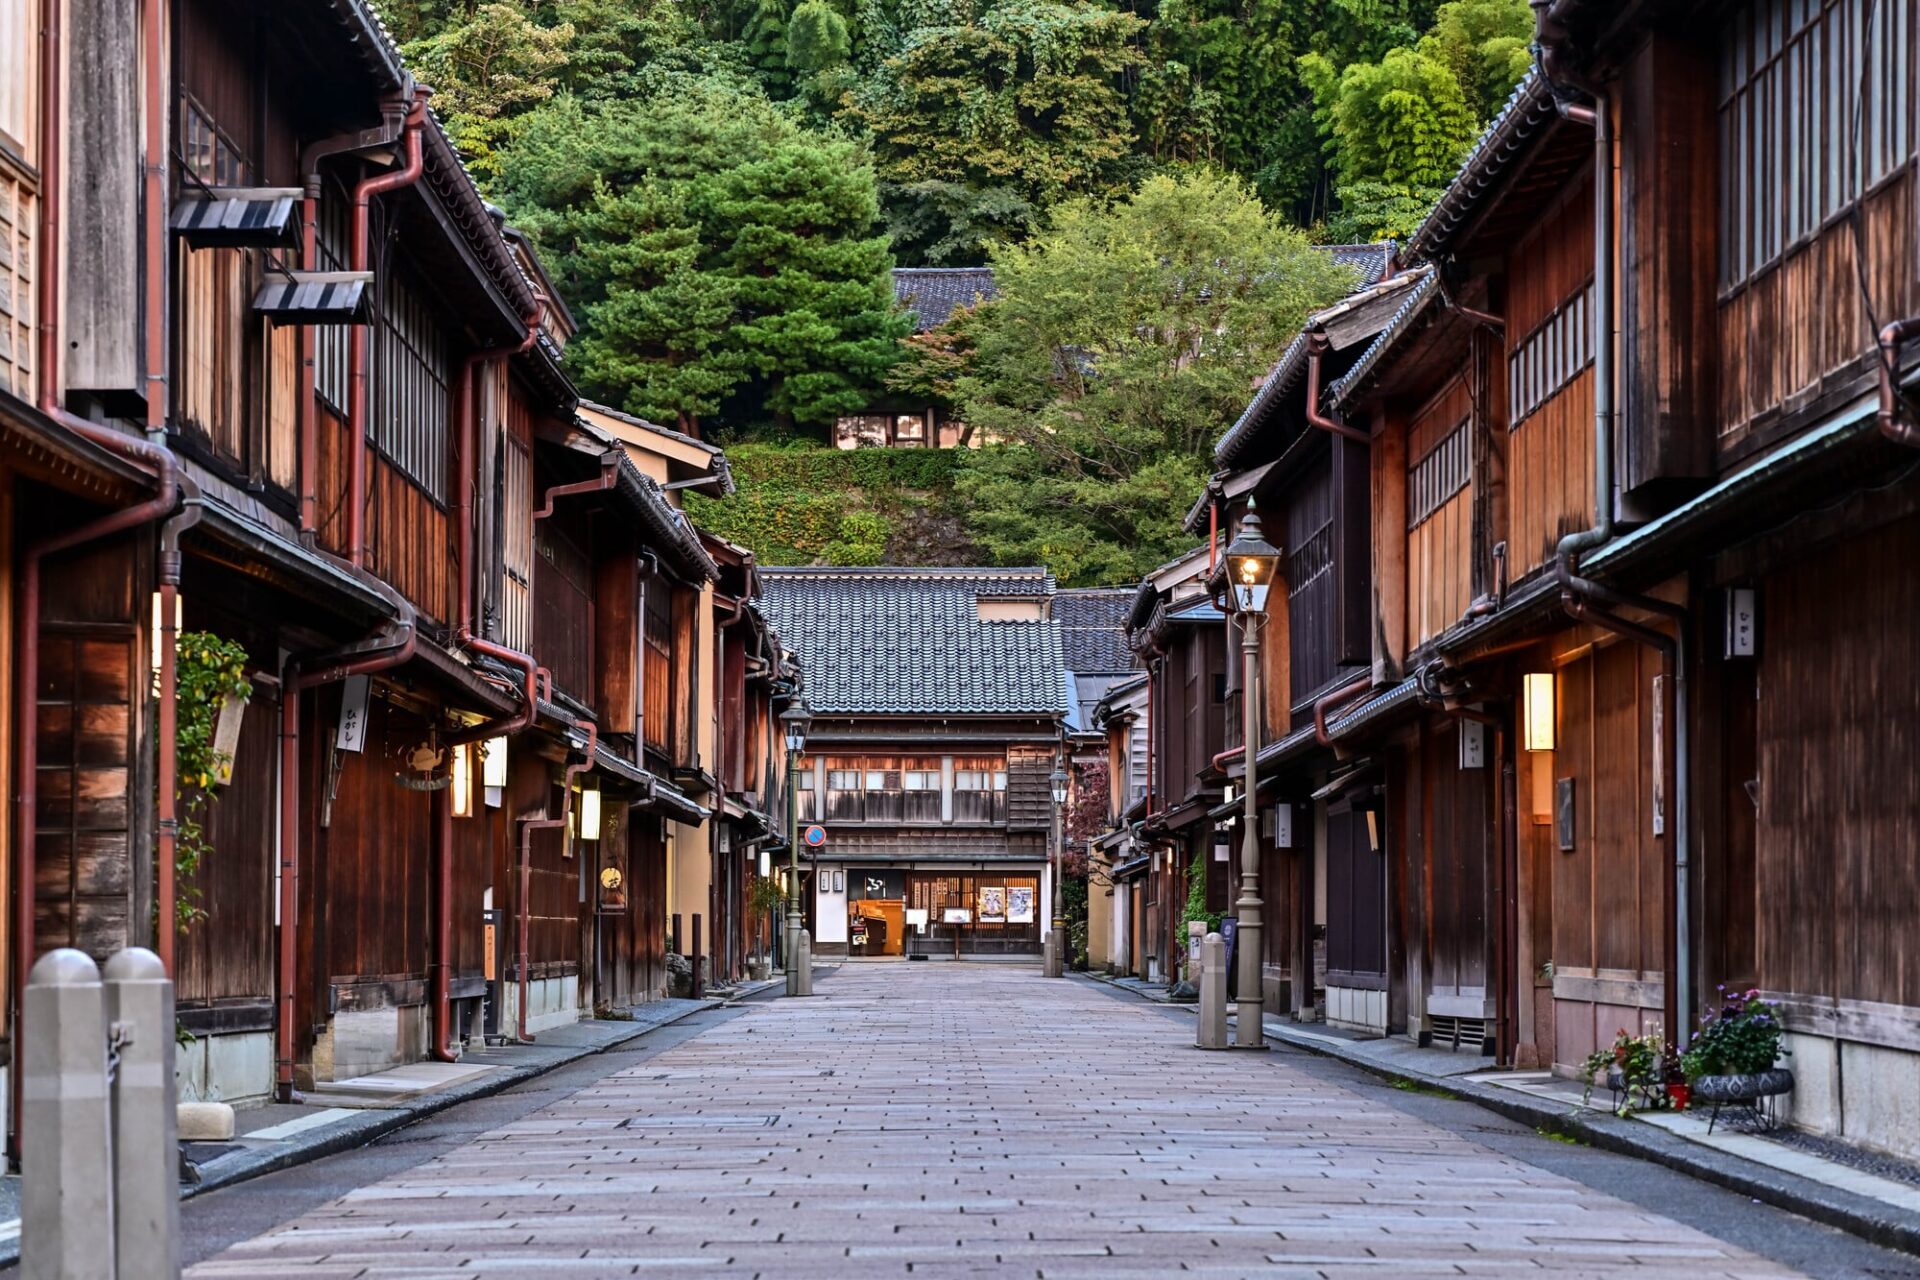 金沢の観光名所として知られるひがし茶屋街